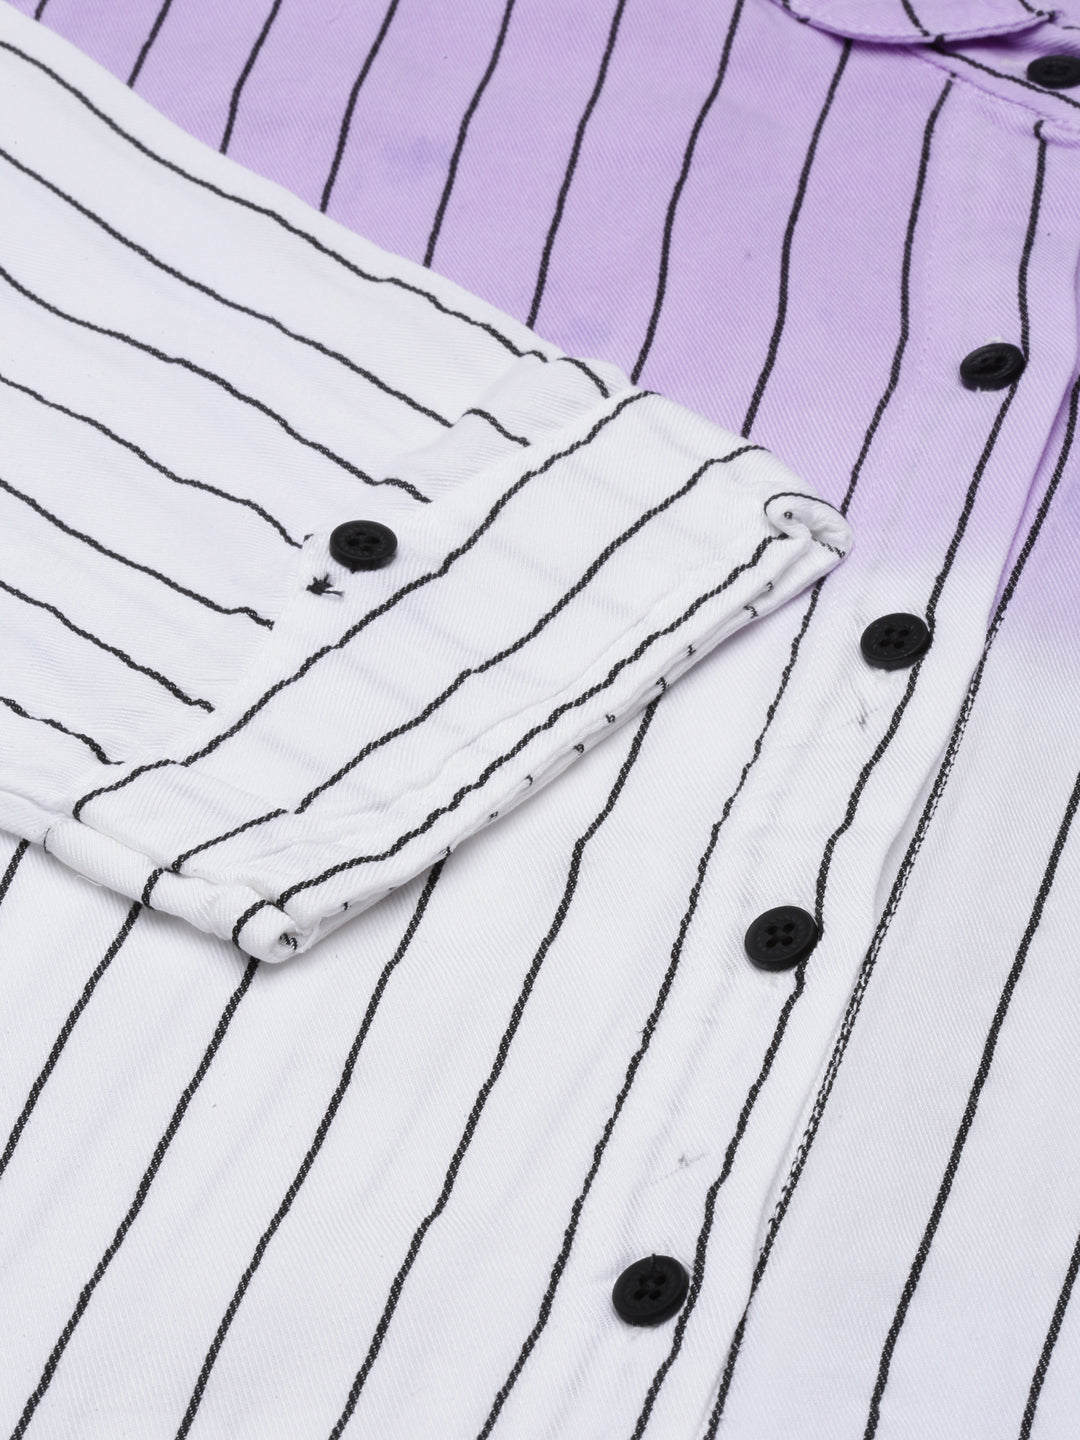 Women Lavender Striped Shirt